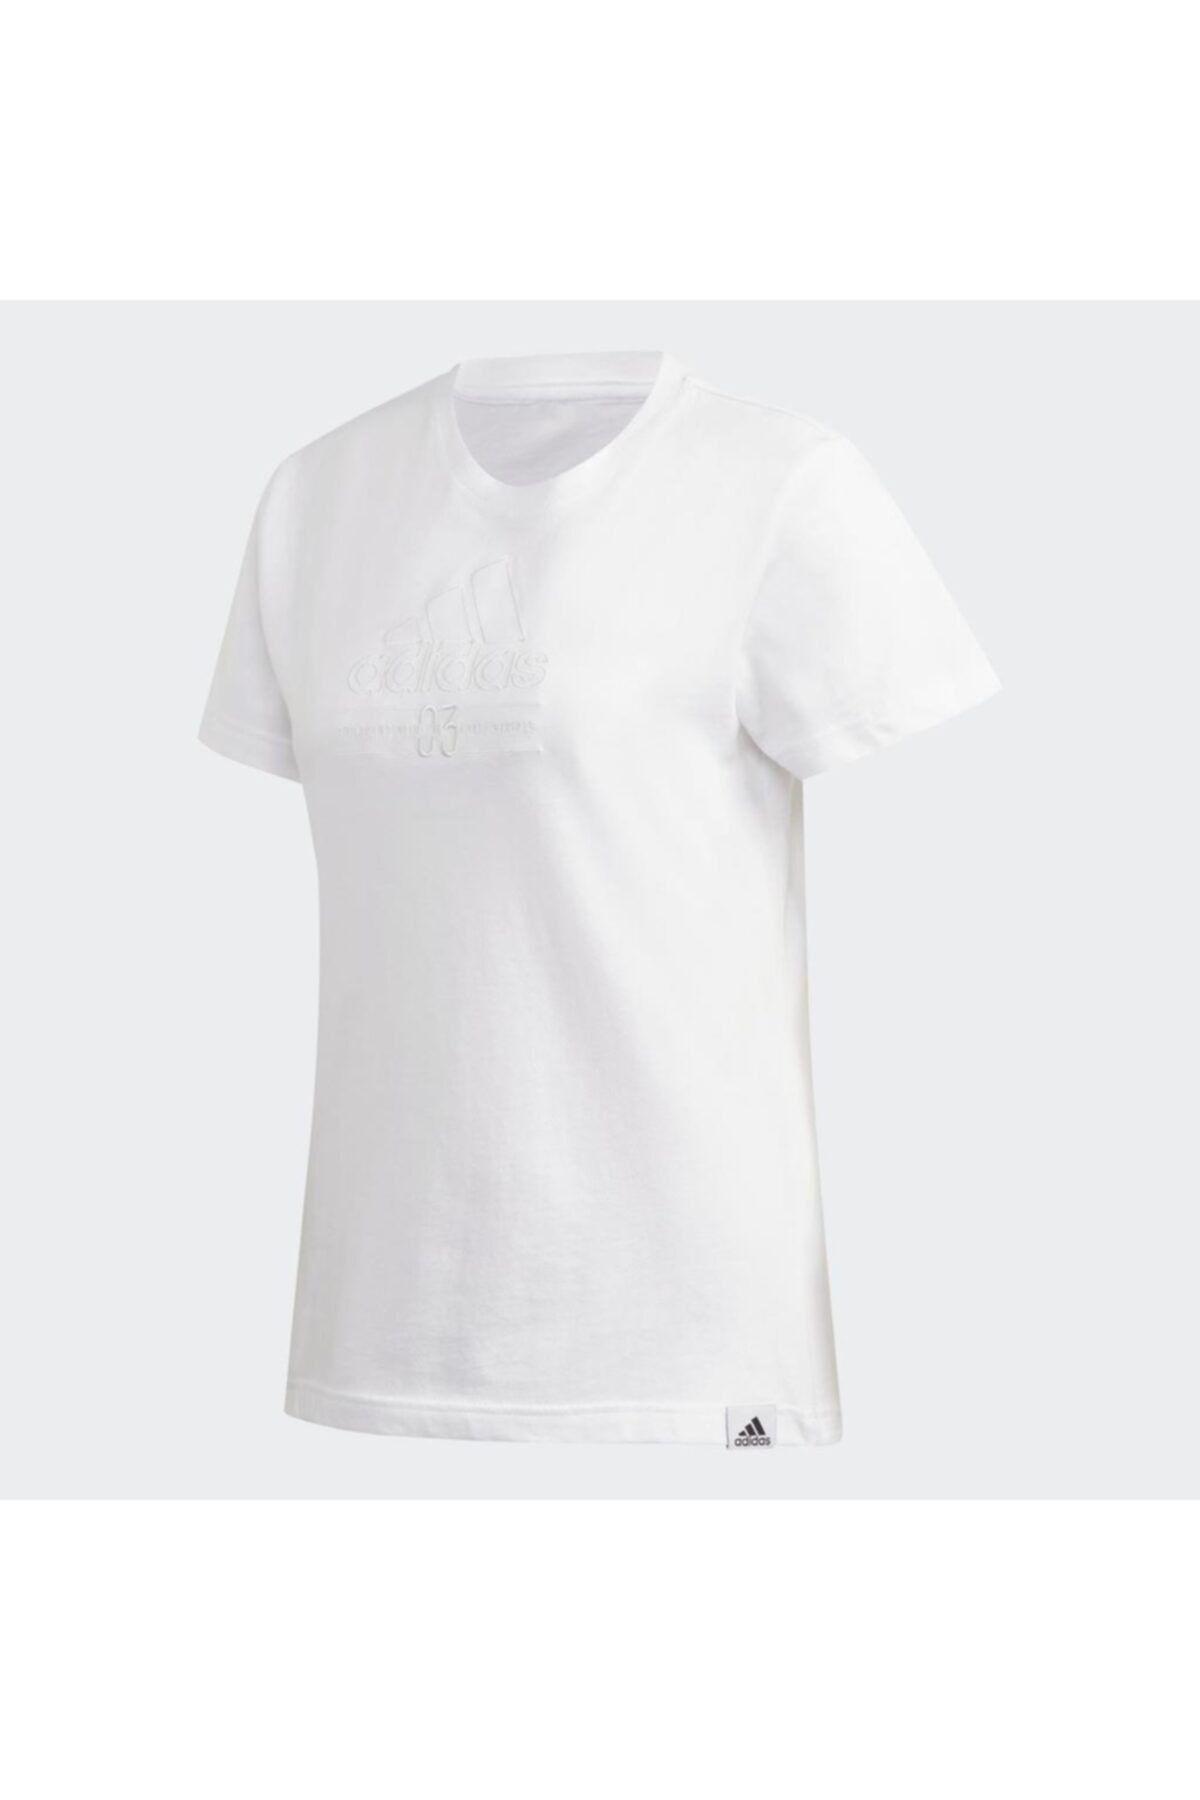 adidas W BB T Beyaz Kadın T-Shirt 101069146